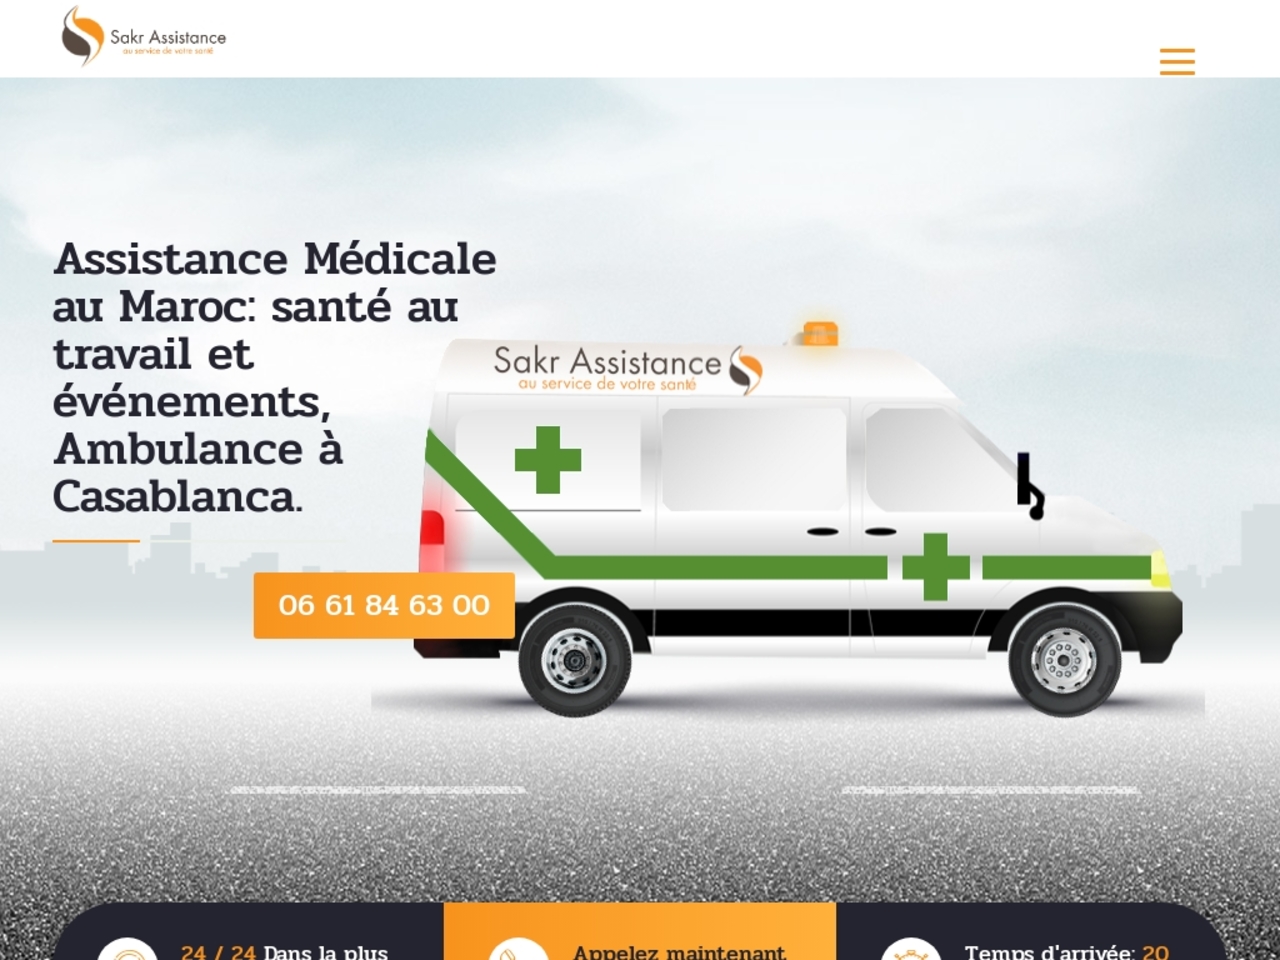 Une assistance médicale et ambulance privée pour travail et événements